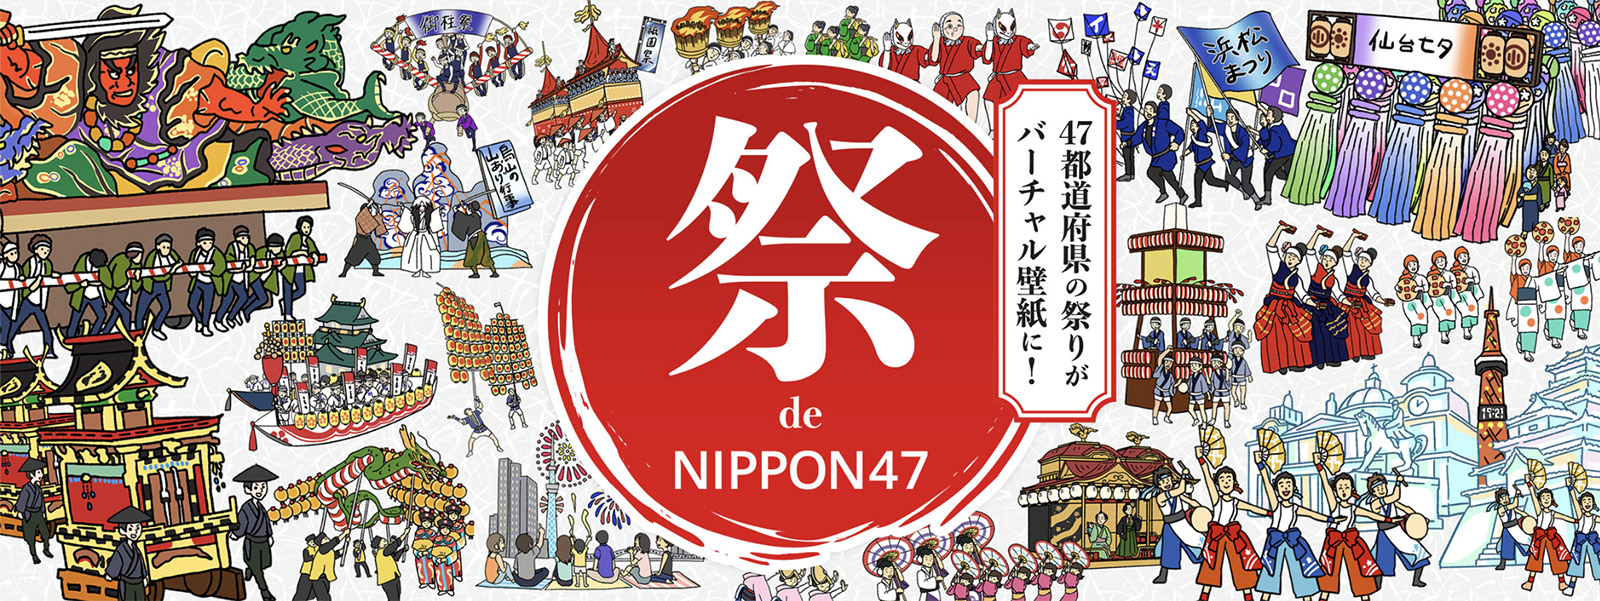 日本の夏応援 マンガデザインで綴る全国47の祭りをバーチャル背景で無料配布 株式会社ニシカワ サービスサイト